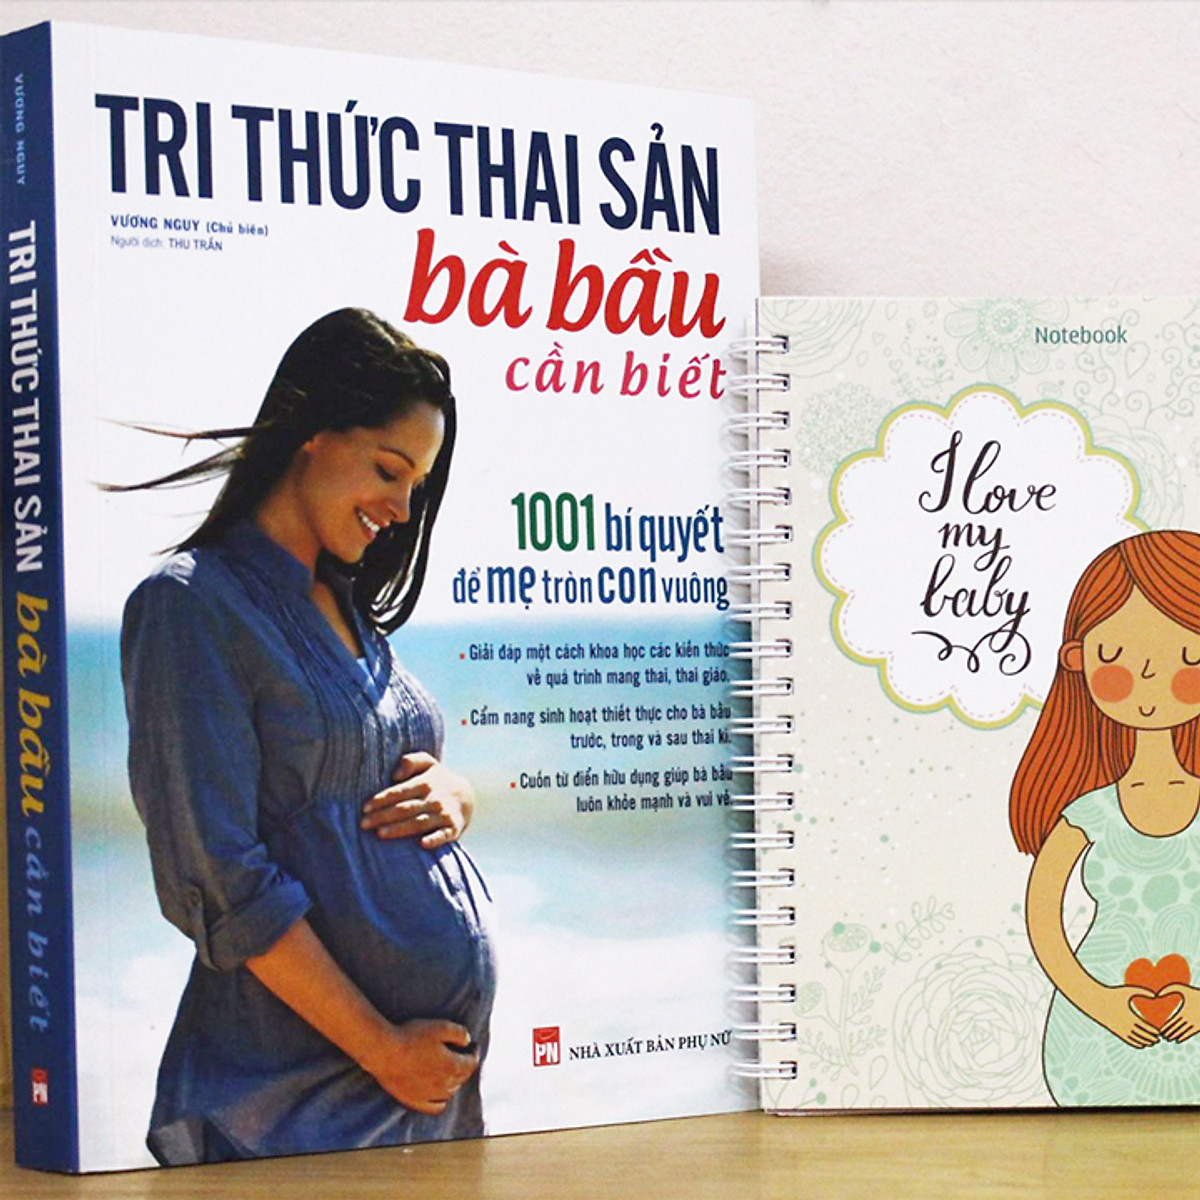 Combo Sách: Tri Thức Thai Sản + Mang Thai Thành Công + Thực Đơn Dinh Dưỡng Cho Trẻ Từ 0-3 Tuổi